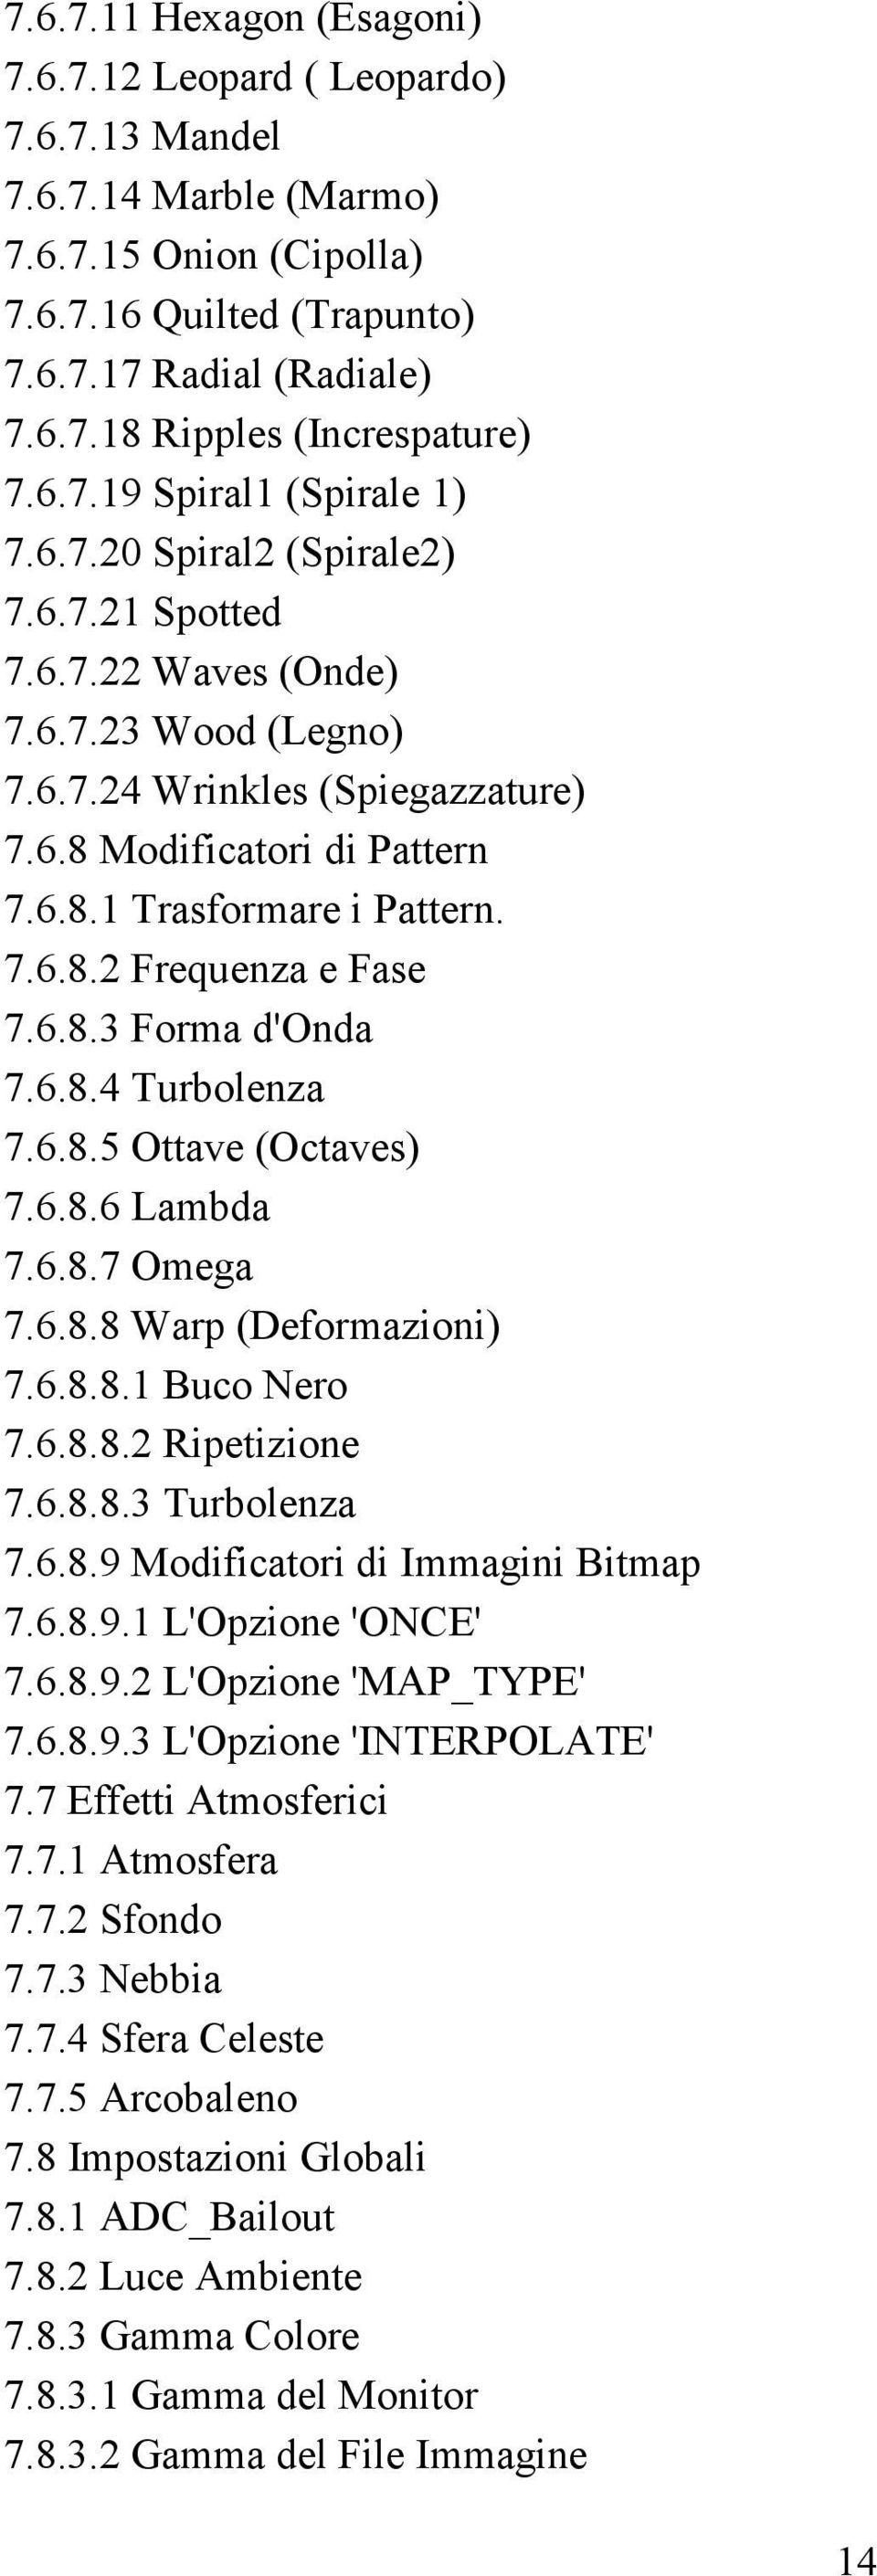 7.6.8.2 Frequenza e Fase 7.6.8.3 Forma d'onda 7.6.8.4 Turbolenza 7.6.8.5 Ottave (Octaves) 7.6.8.6 Lambda 7.6.8.7 Omega 7.6.8.8 Warp (Deformazioni) 7.6.8.8.1 Buco Nero 7.6.8.8.2 Ripetizione 7.6.8.8.3 Turbolenza 7.